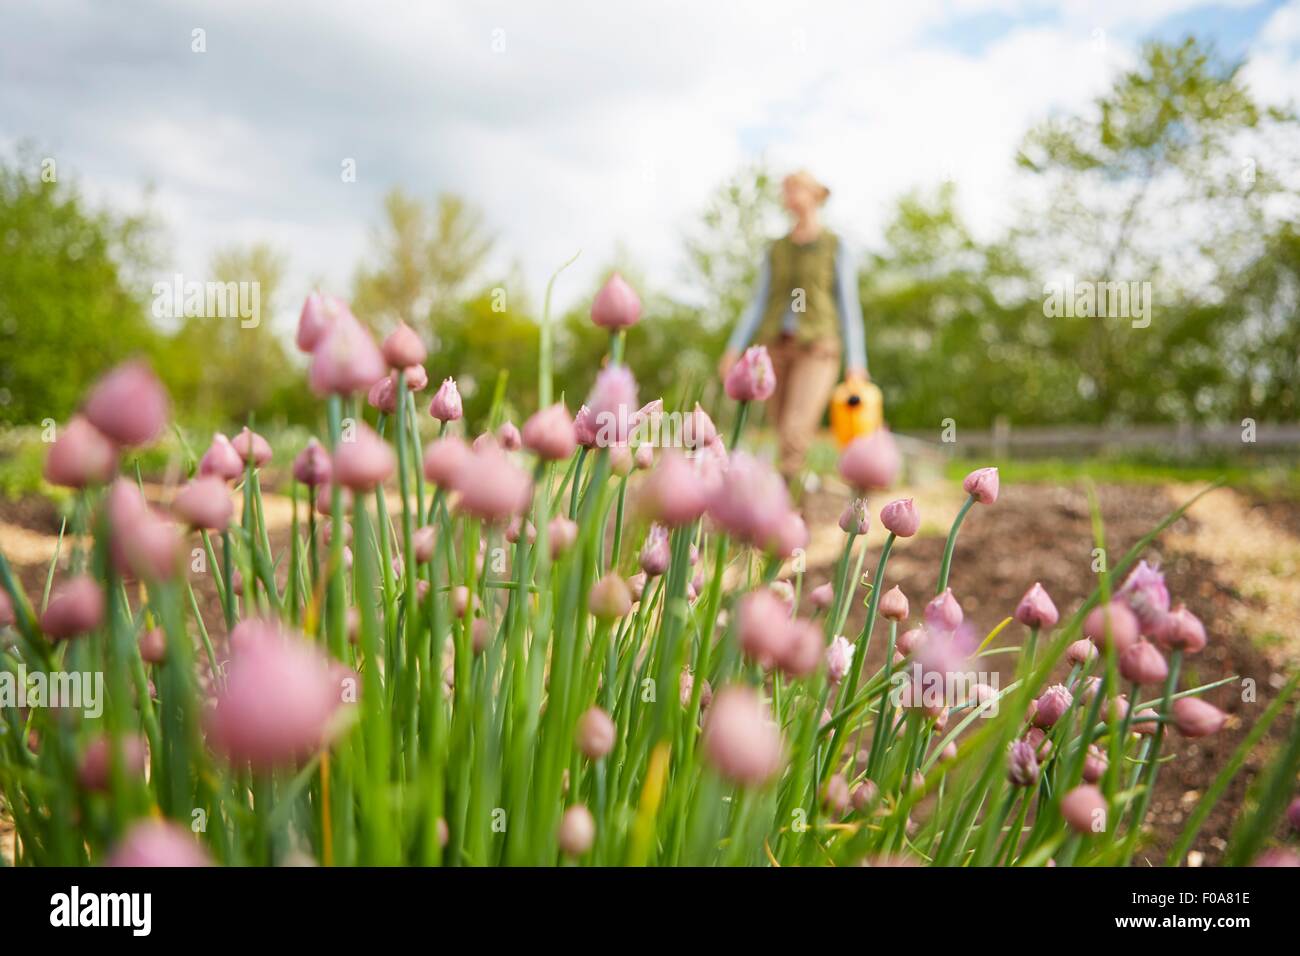 Femme mature, en plein air, jardinage, exerçant son arrosoir, l'accent sur les fleurs Banque D'Images